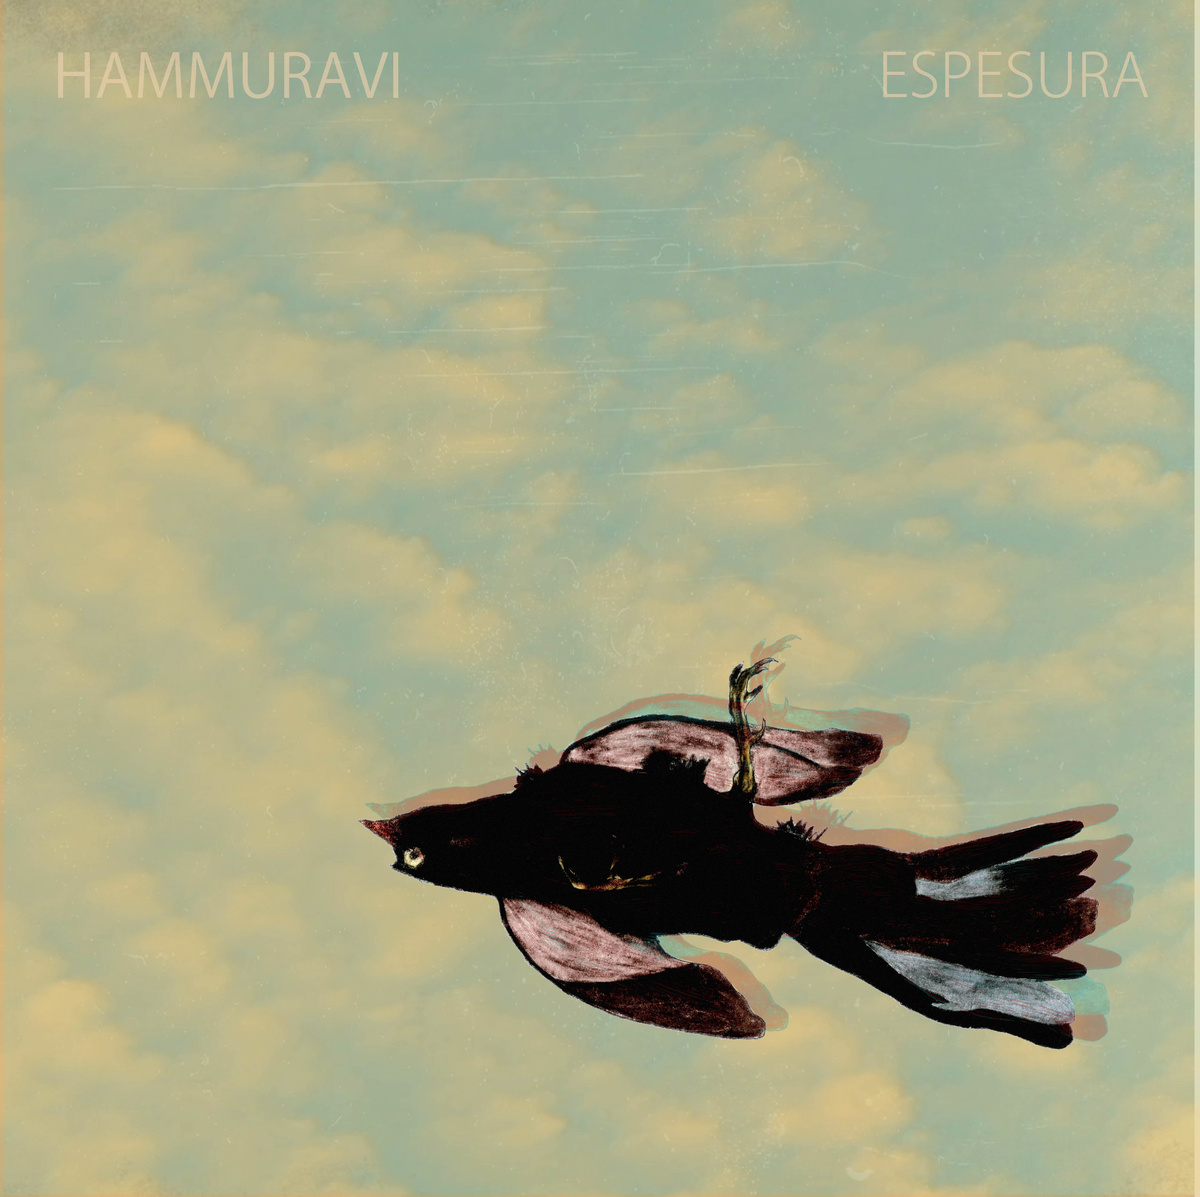 Hammuravi-Espesura (2015)